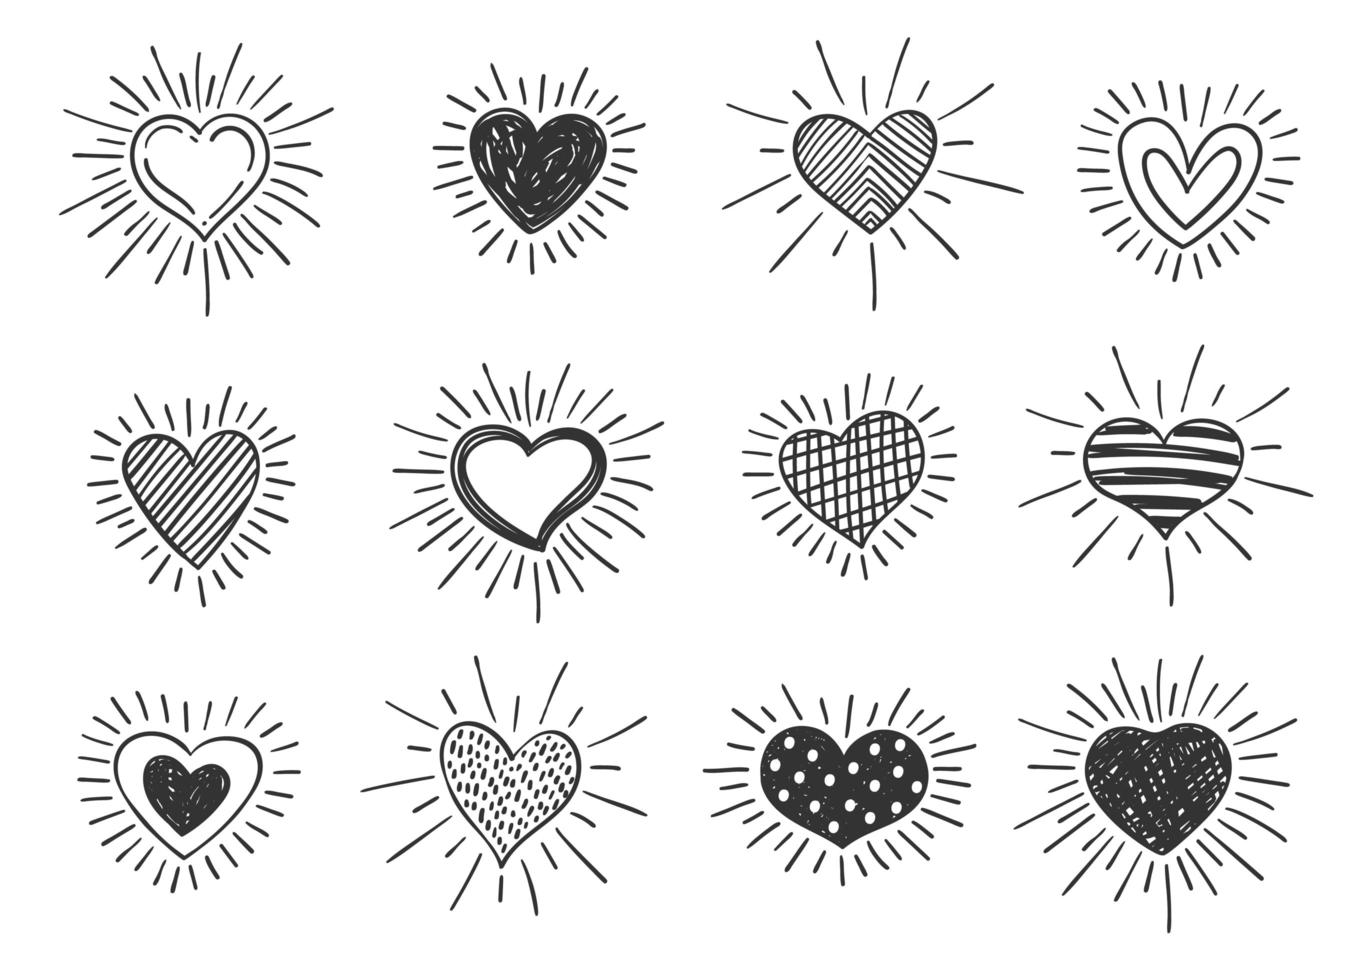 ensemble de symboles en forme de coeur décorés de griffonnage avec des rayons de soleil de style rétro. collection de différents coeurs romantiques dessinés à la main pour la conception d'autocollants, d'étiquettes, de logos d'amour et de la Saint-Valentin. vecteur